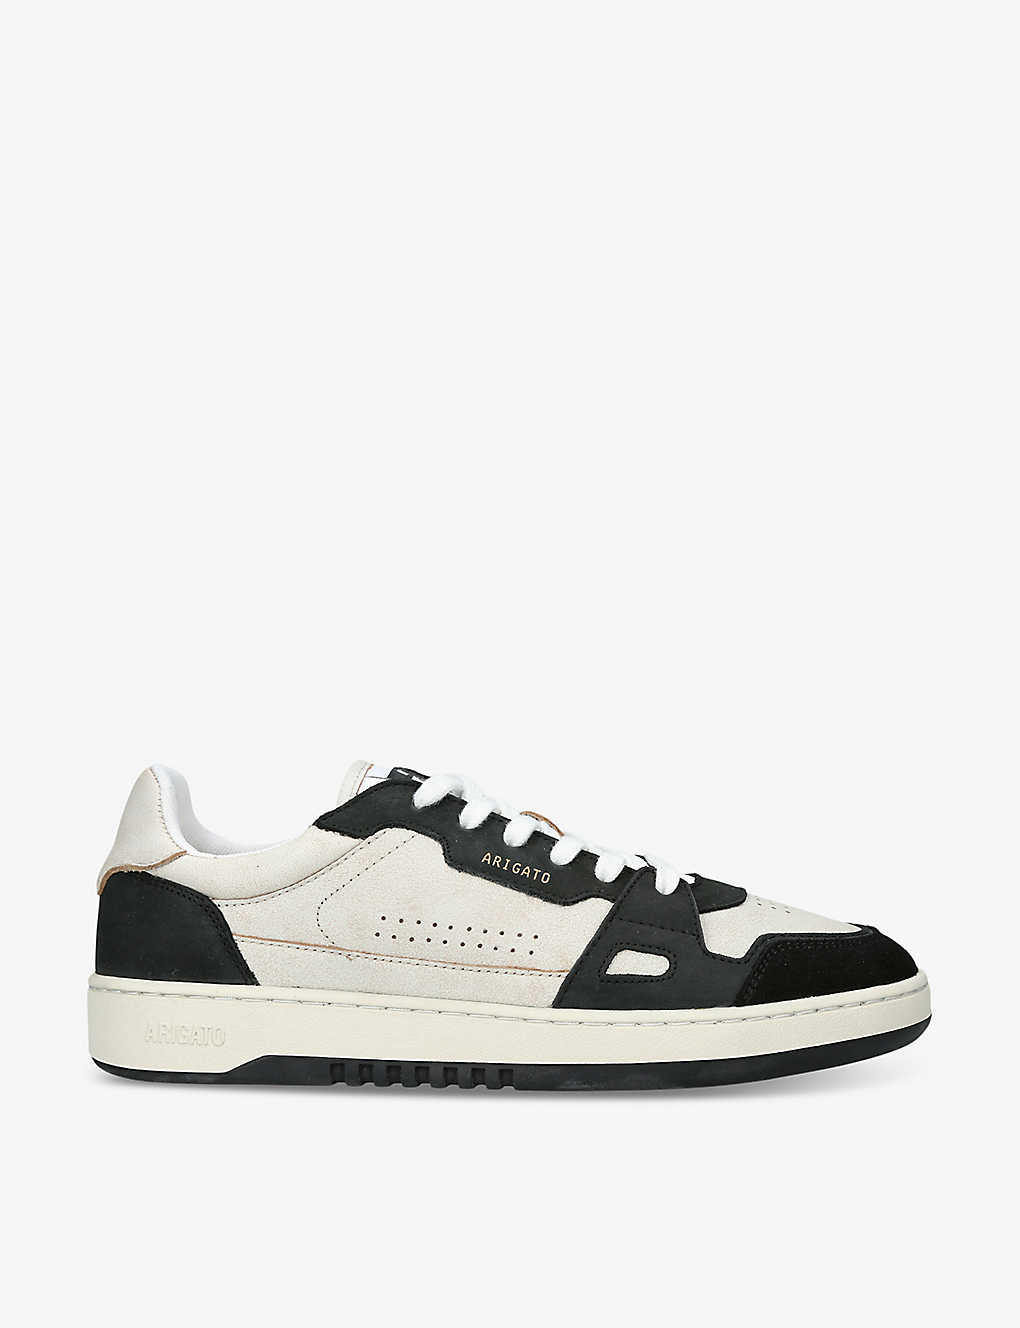 Axel Arigato Dice Lo Leather Sneaker In White/blk